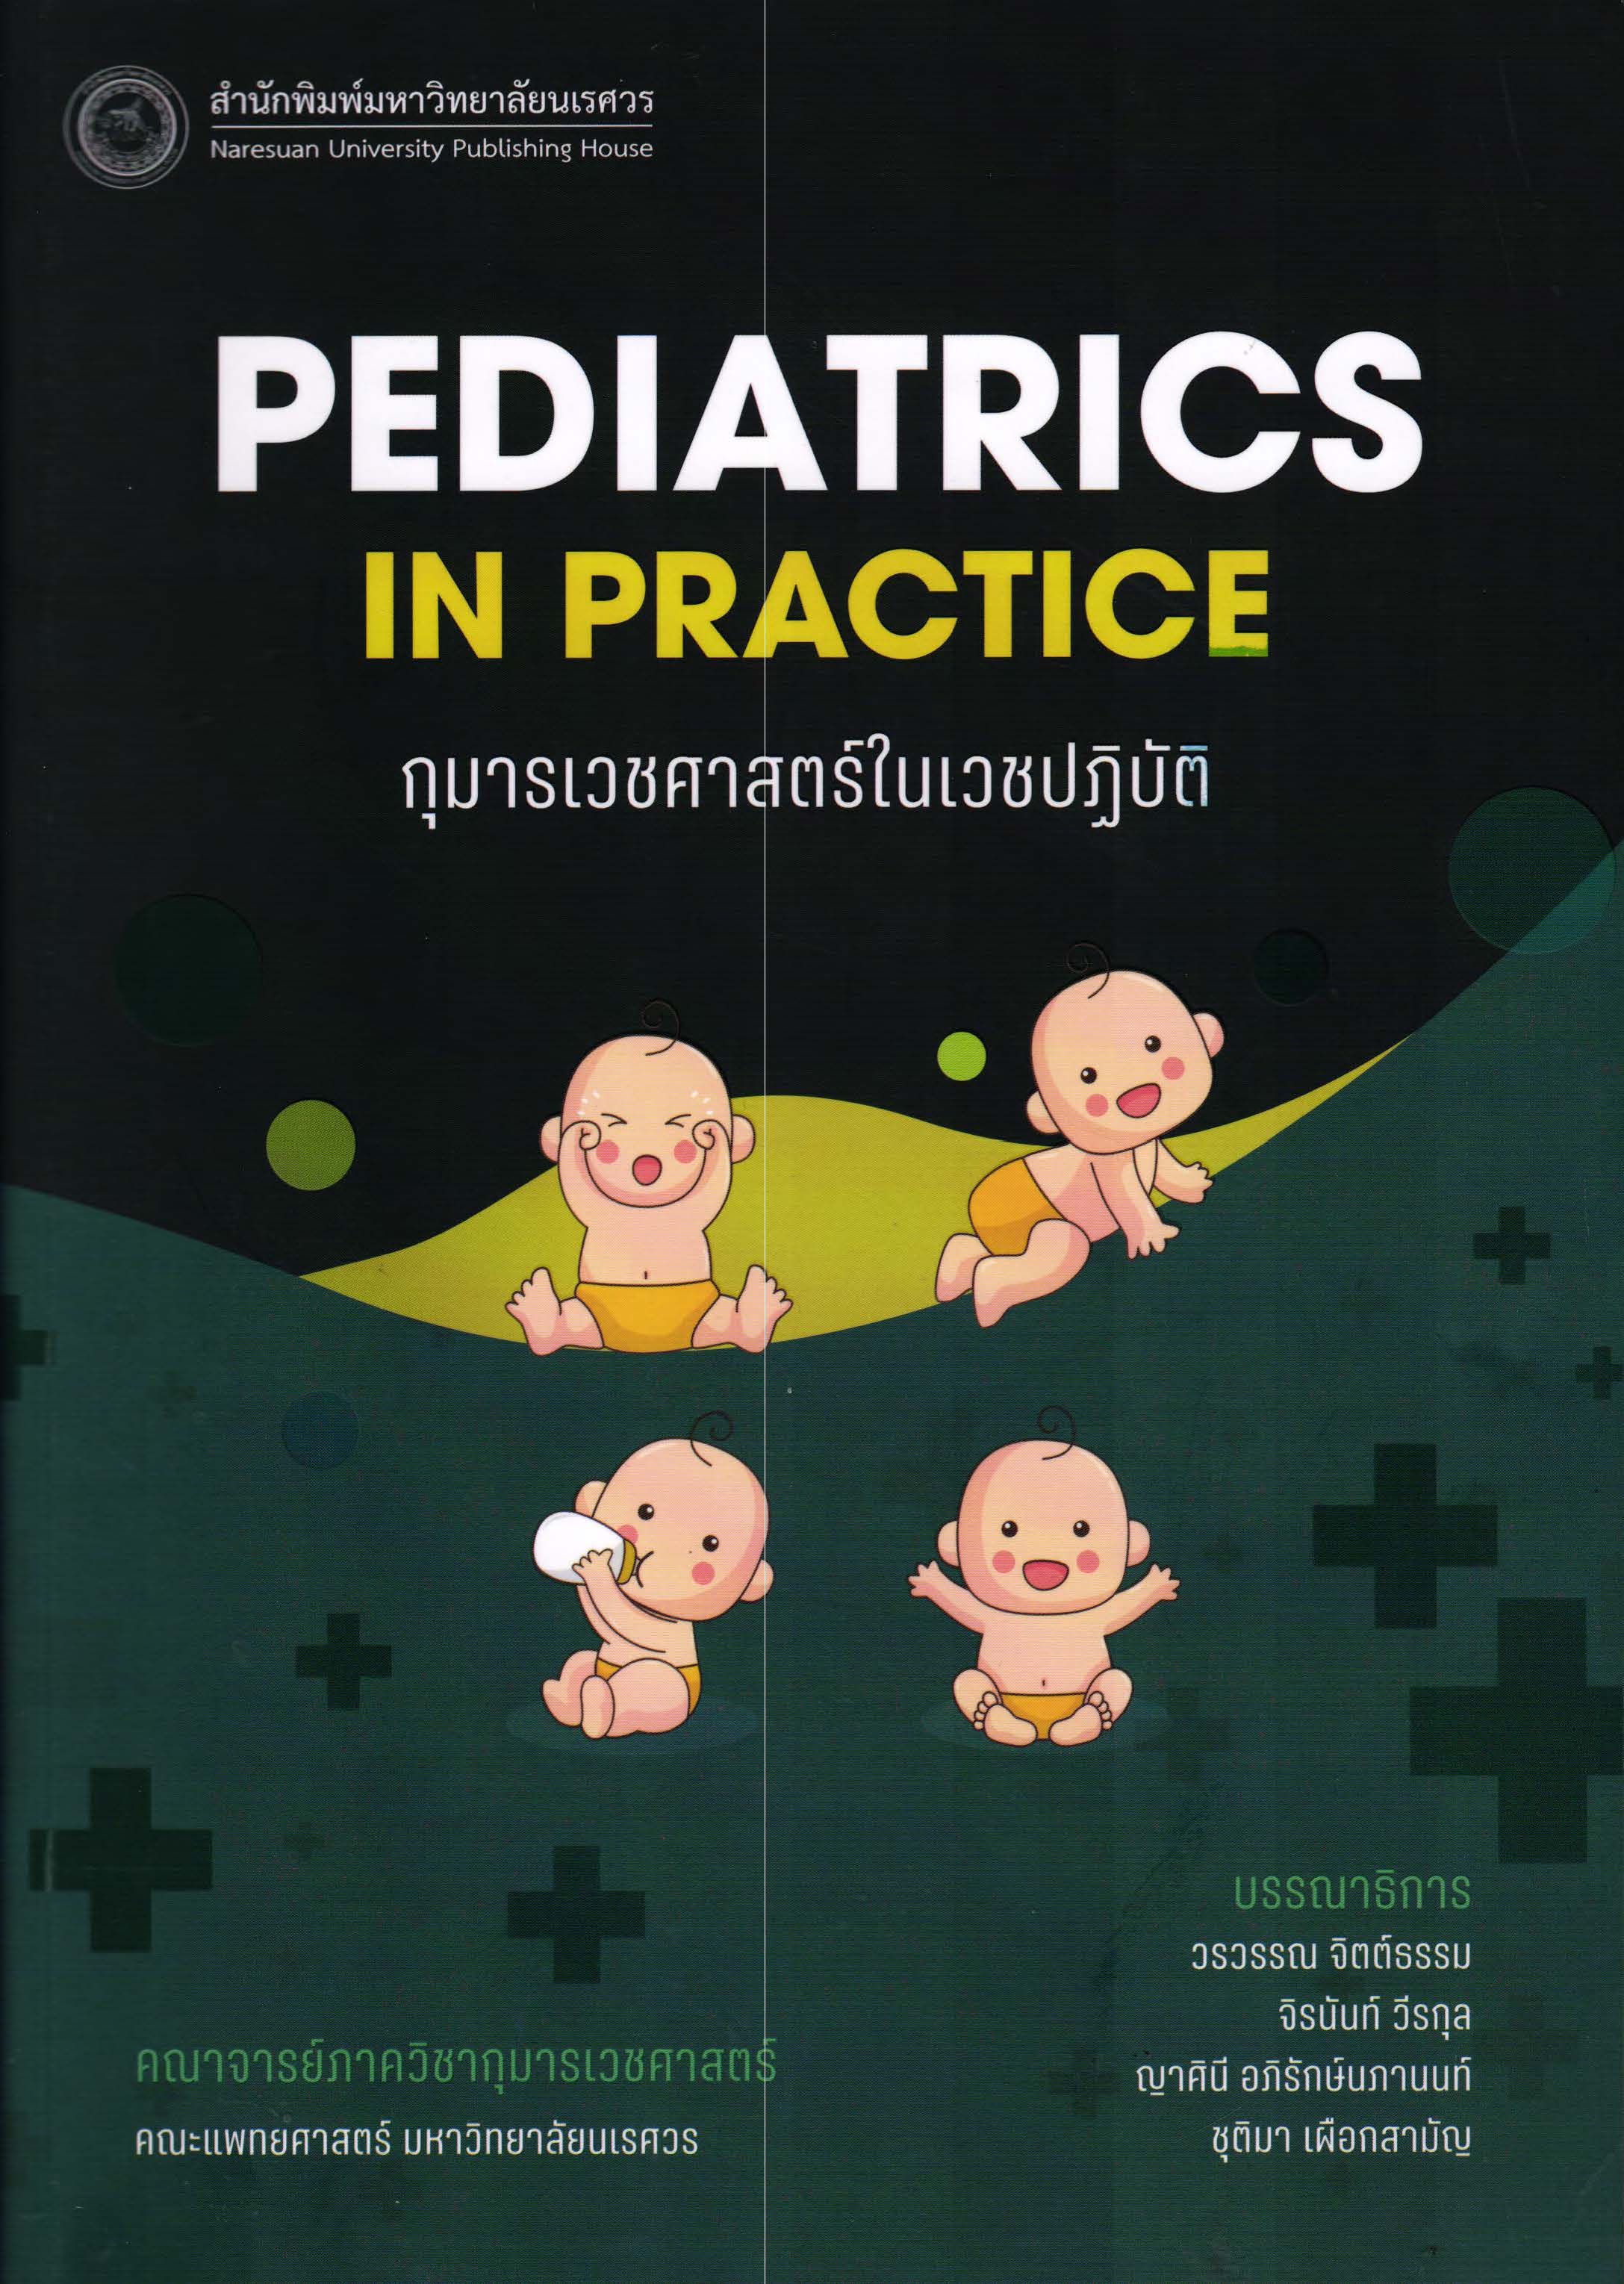 กุมารเวชศาสตร์ในเวชปฏิบัติ = Pediatrics in practice